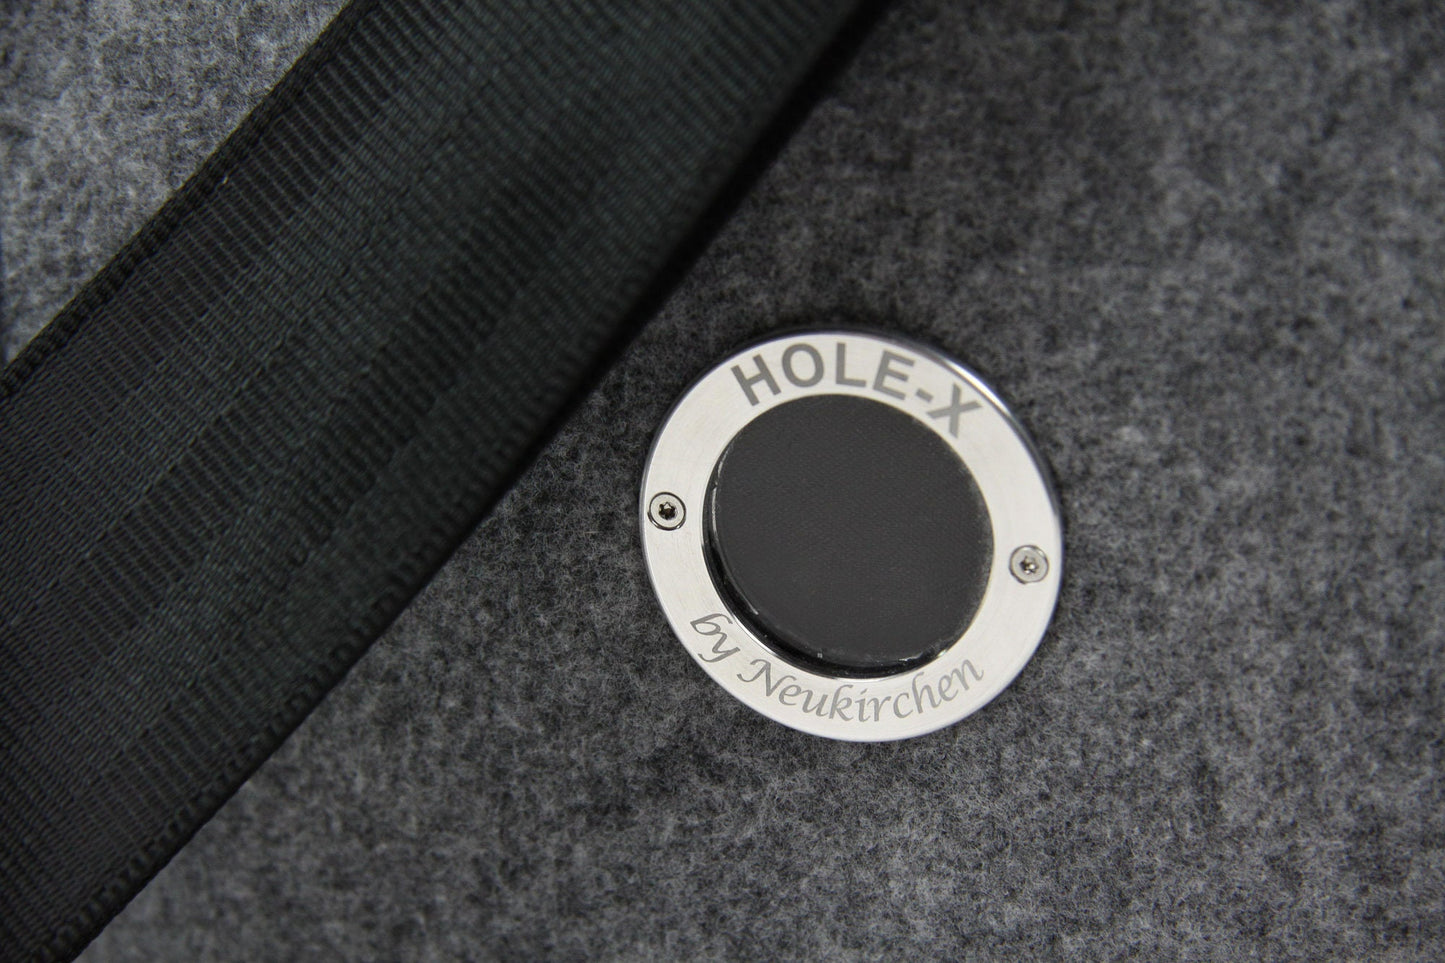 HOLE-X ALFA Umhängetasche schwarz Filz Bringe Deine Tasche zum Leuchten mit Deinem Smartphone